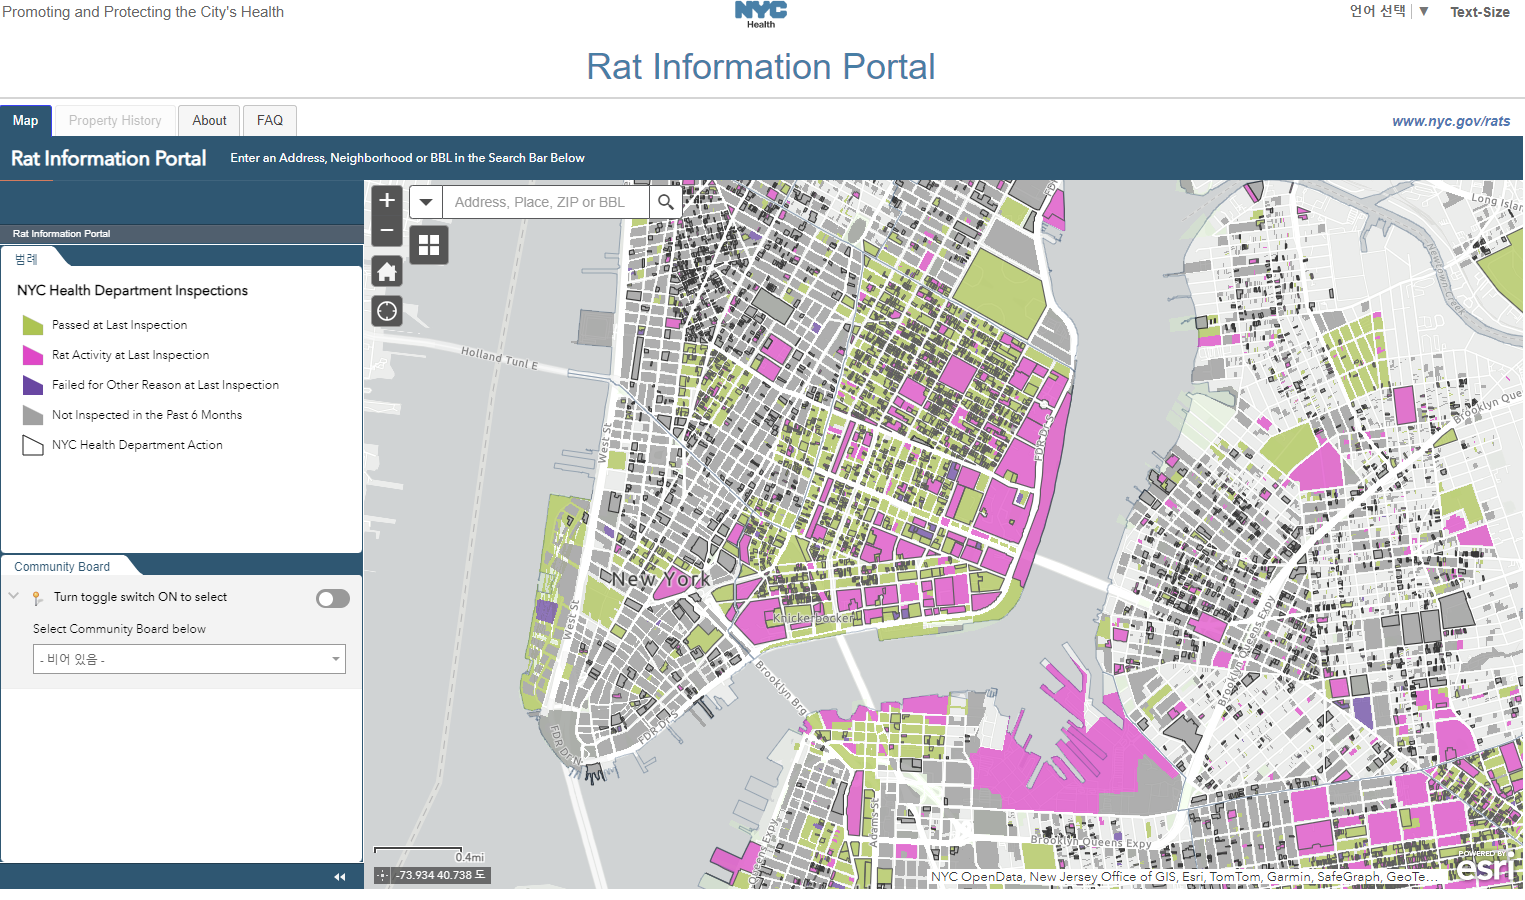 뉴욕 시가 만든 쥐 지도. 붉은 색은 쥐 활동이 확인된 곳, 연두색은 점검에서 통과된 지역이다.